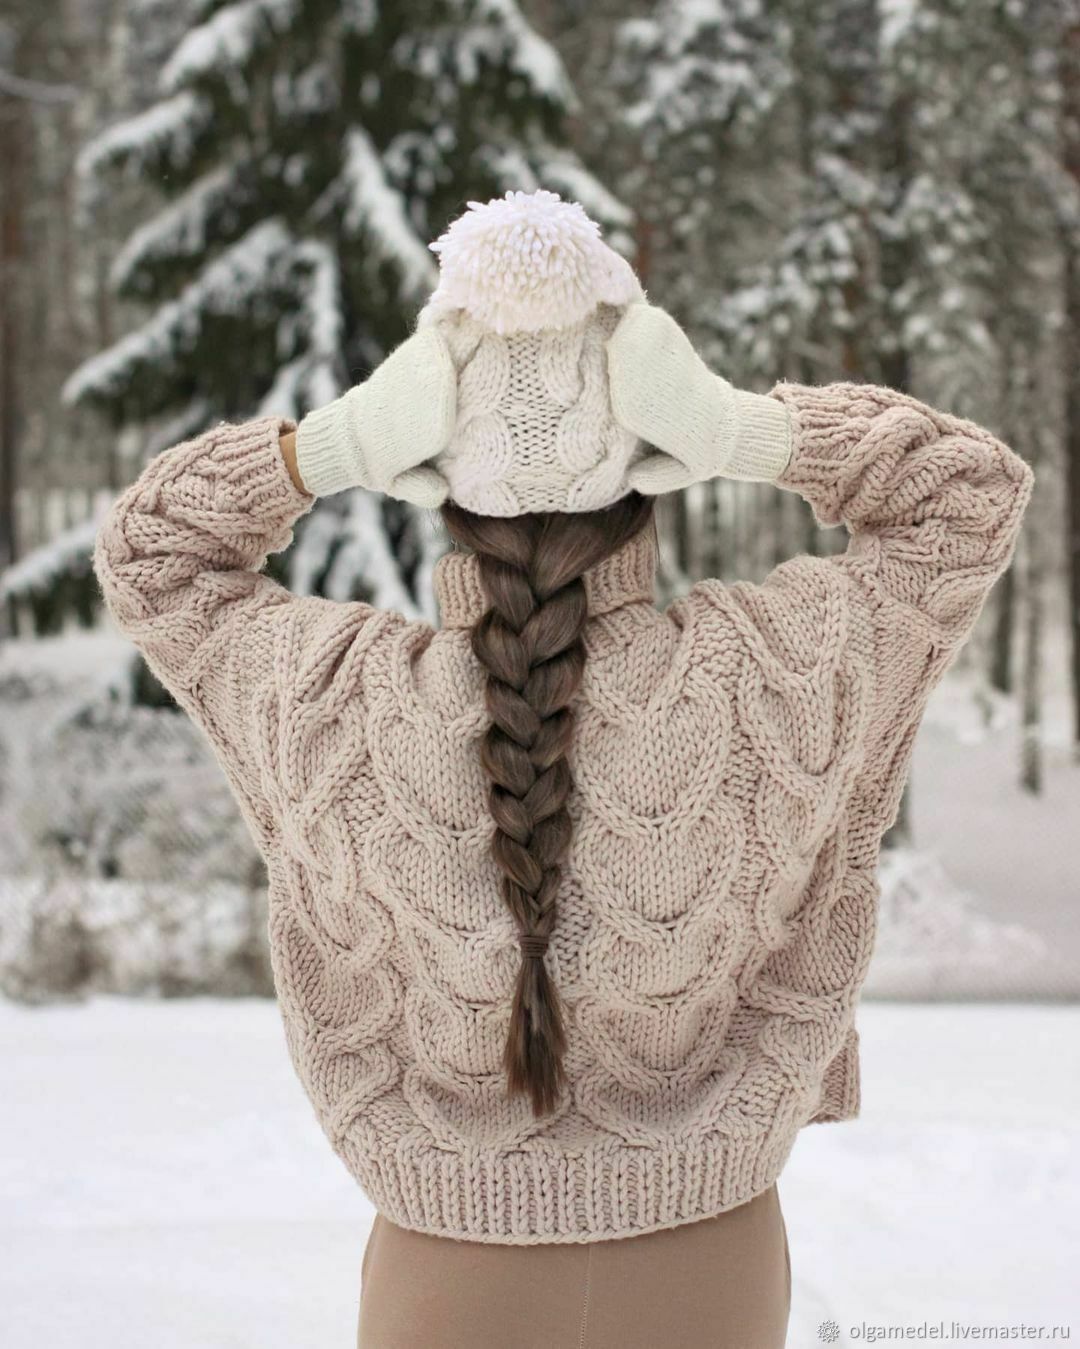 Как выбрать свитер по типу фигуры — Подбираем идеальный женский свитер